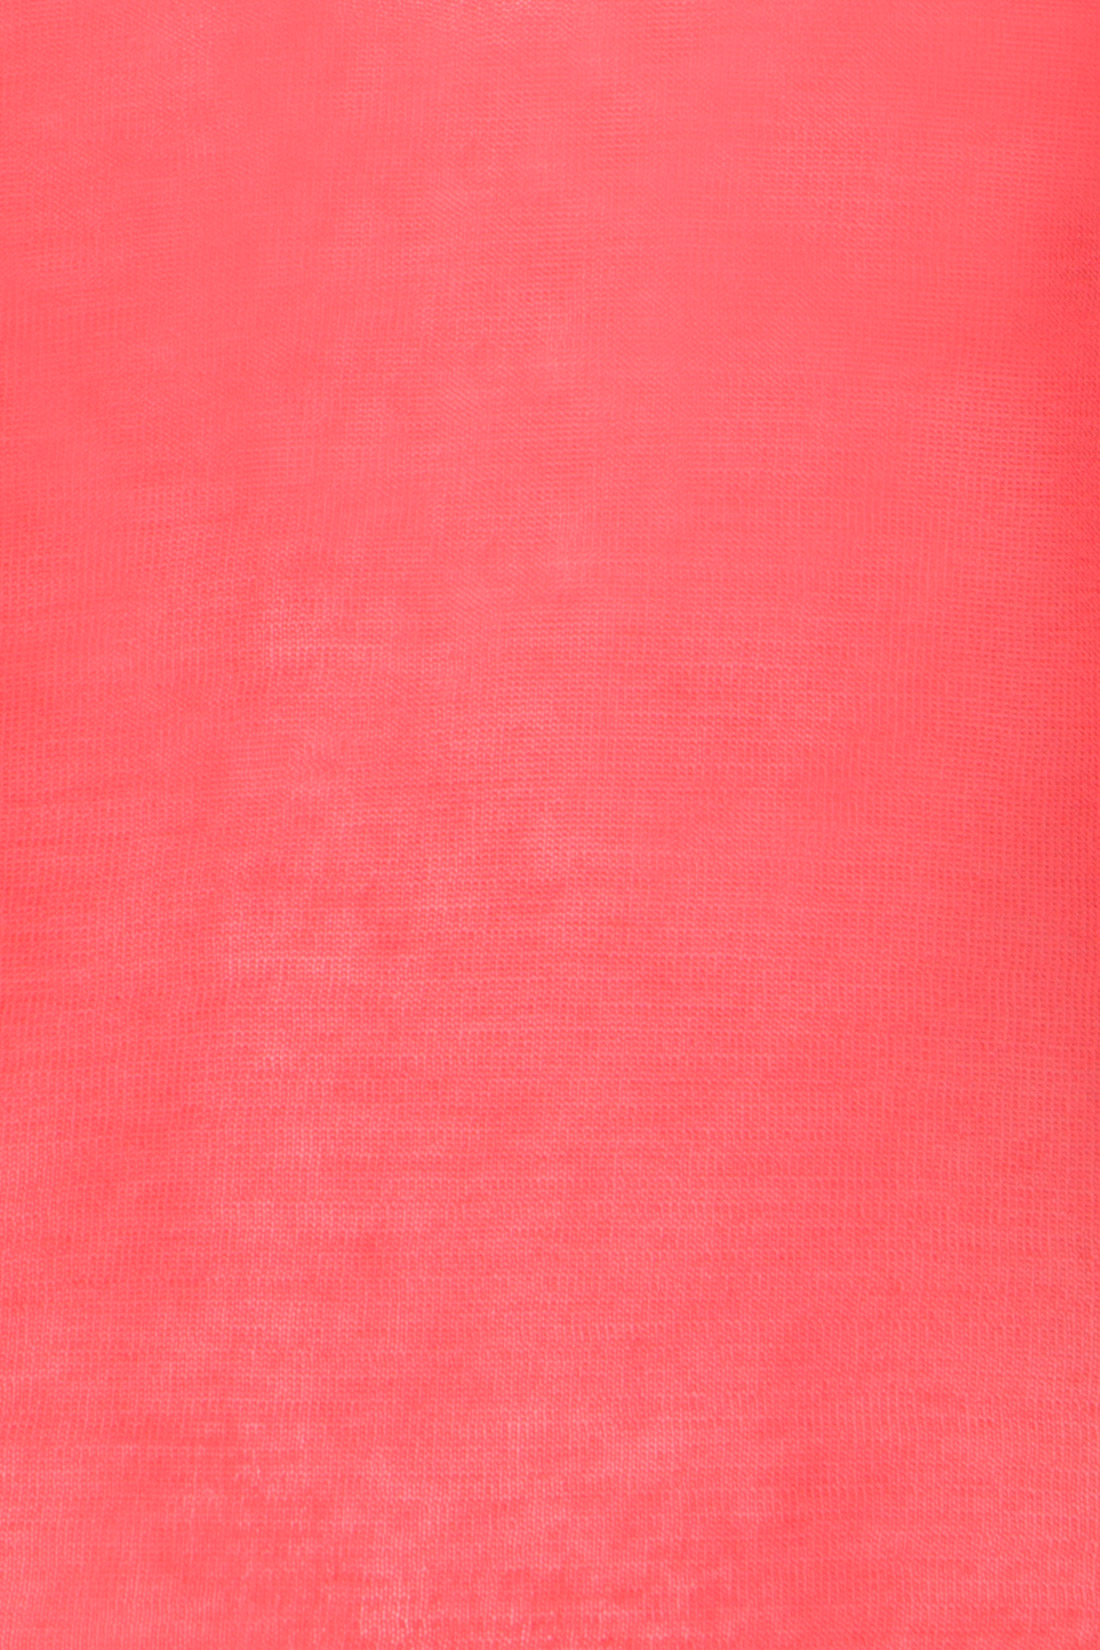 Пуловер из тонкого трикотажа (арт. baon B137016), размер S, цвет белый Пуловер из тонкого трикотажа (арт. baon B137016) - фото 3